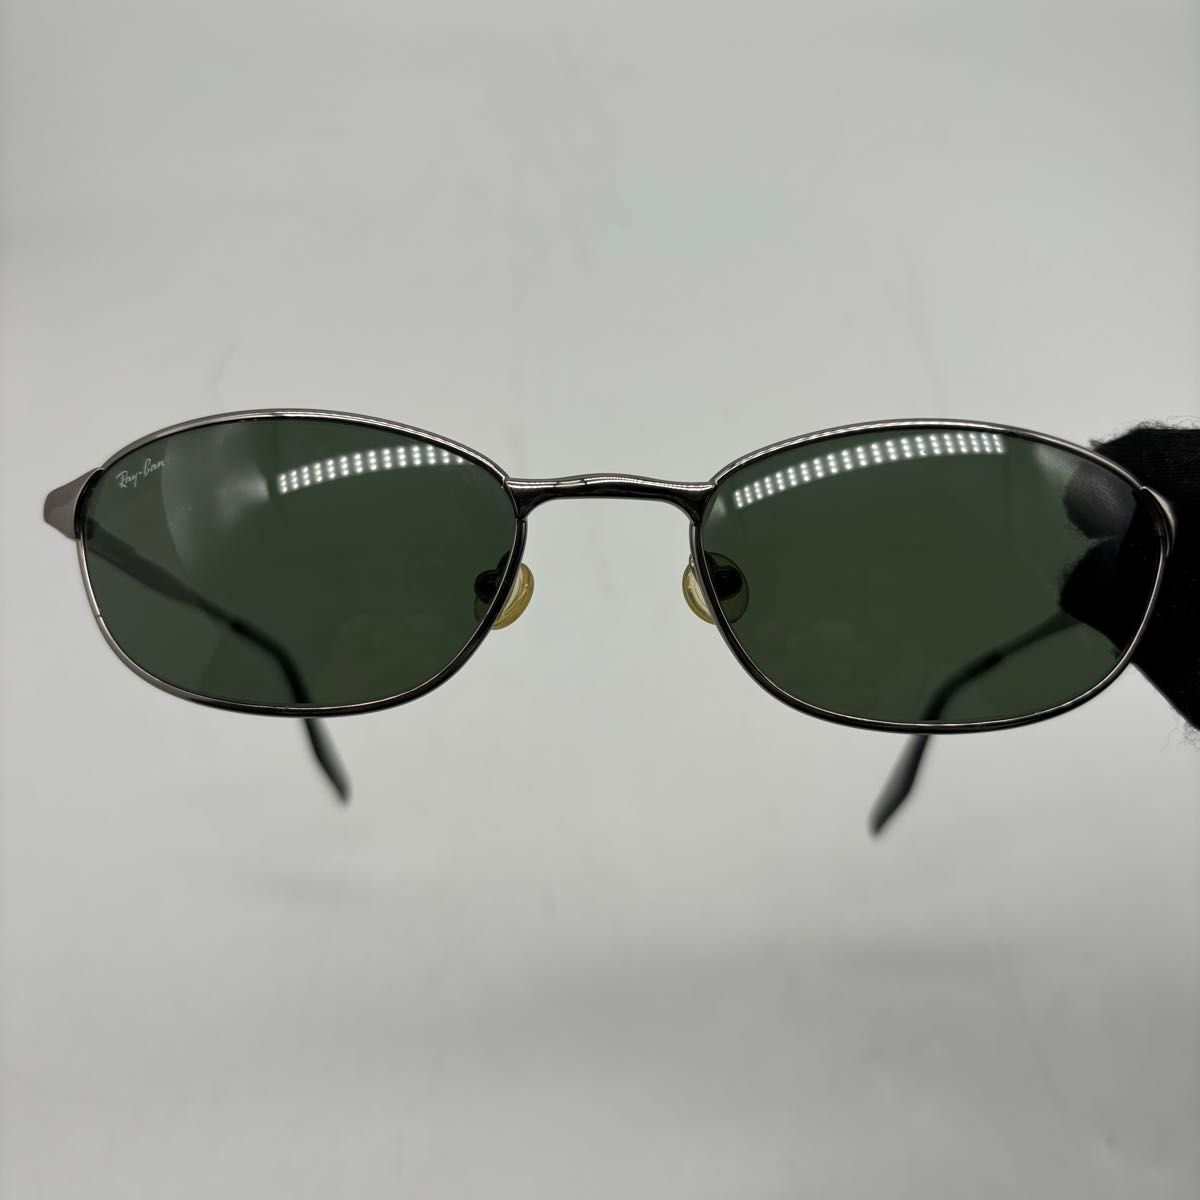 Ray-Ban レイバン RB 3023 W2962 サングラス メガネ 眼鏡 シルバー系 